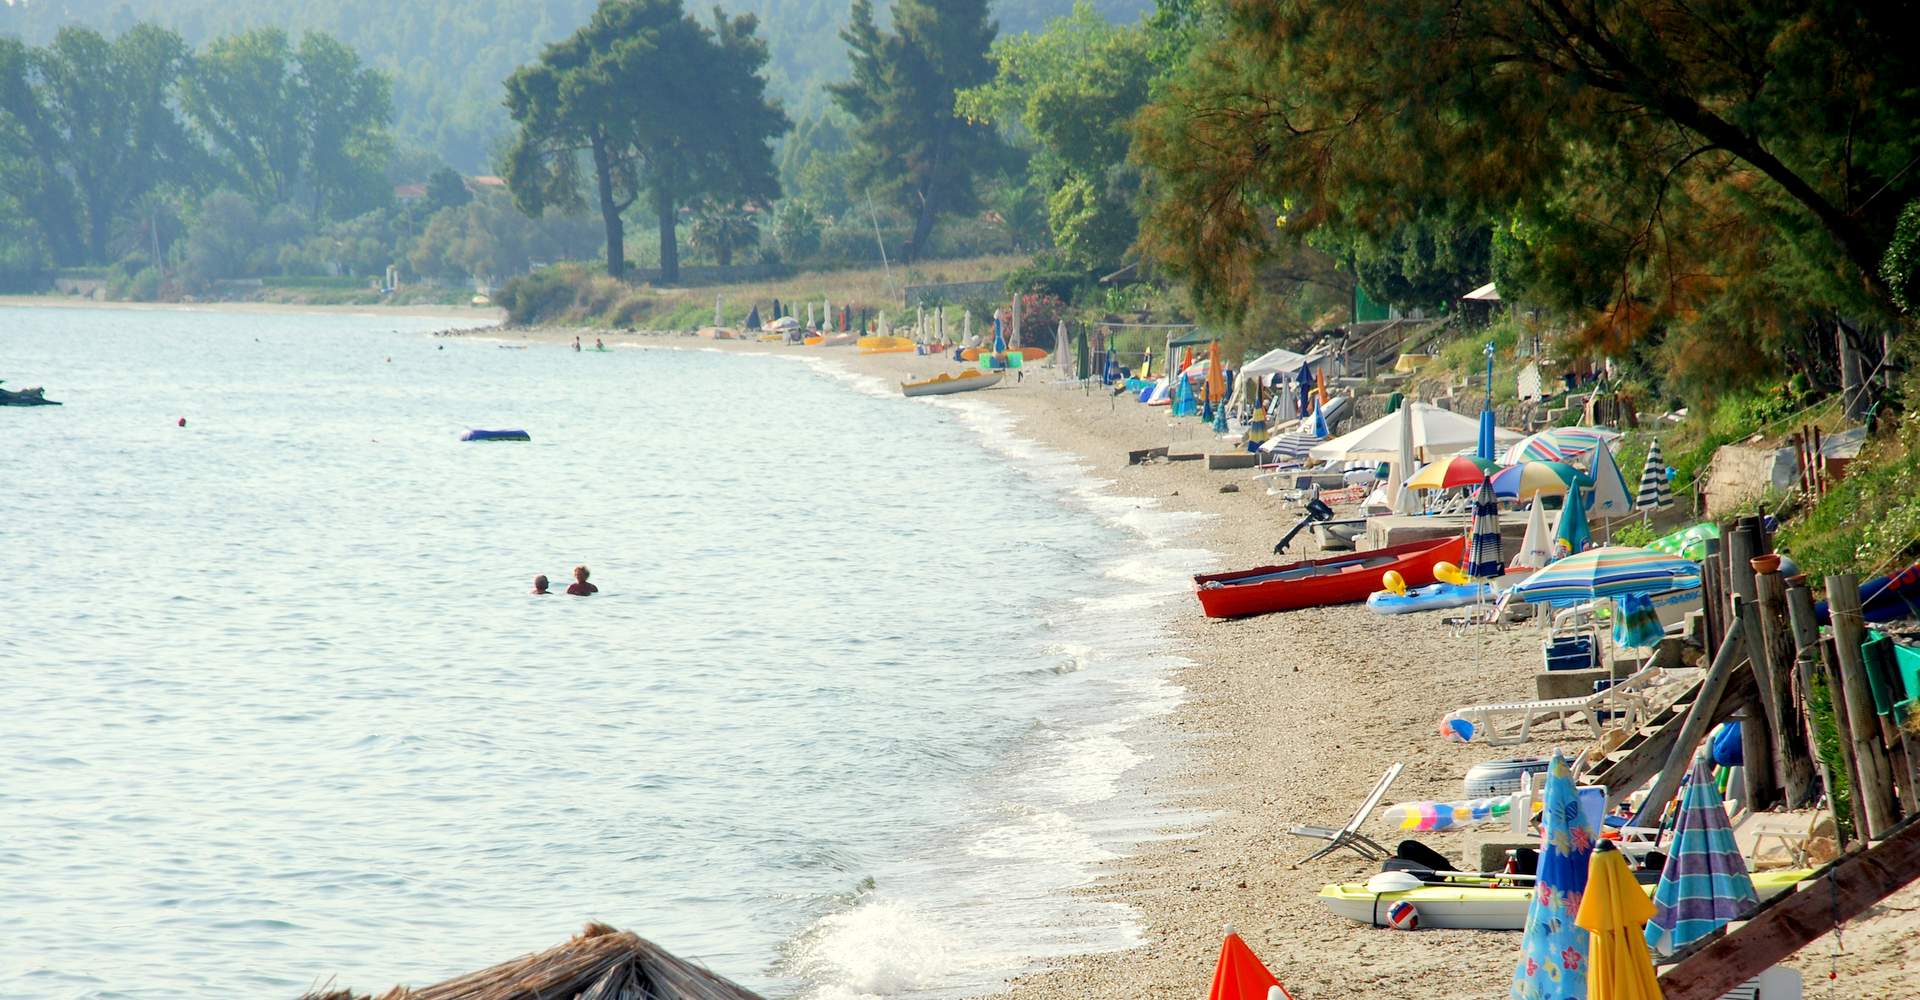 Κρυοπηγή παραλία κάμπινγκ, Κασσάνδρα, Χαλκιδική, Ελλάδα